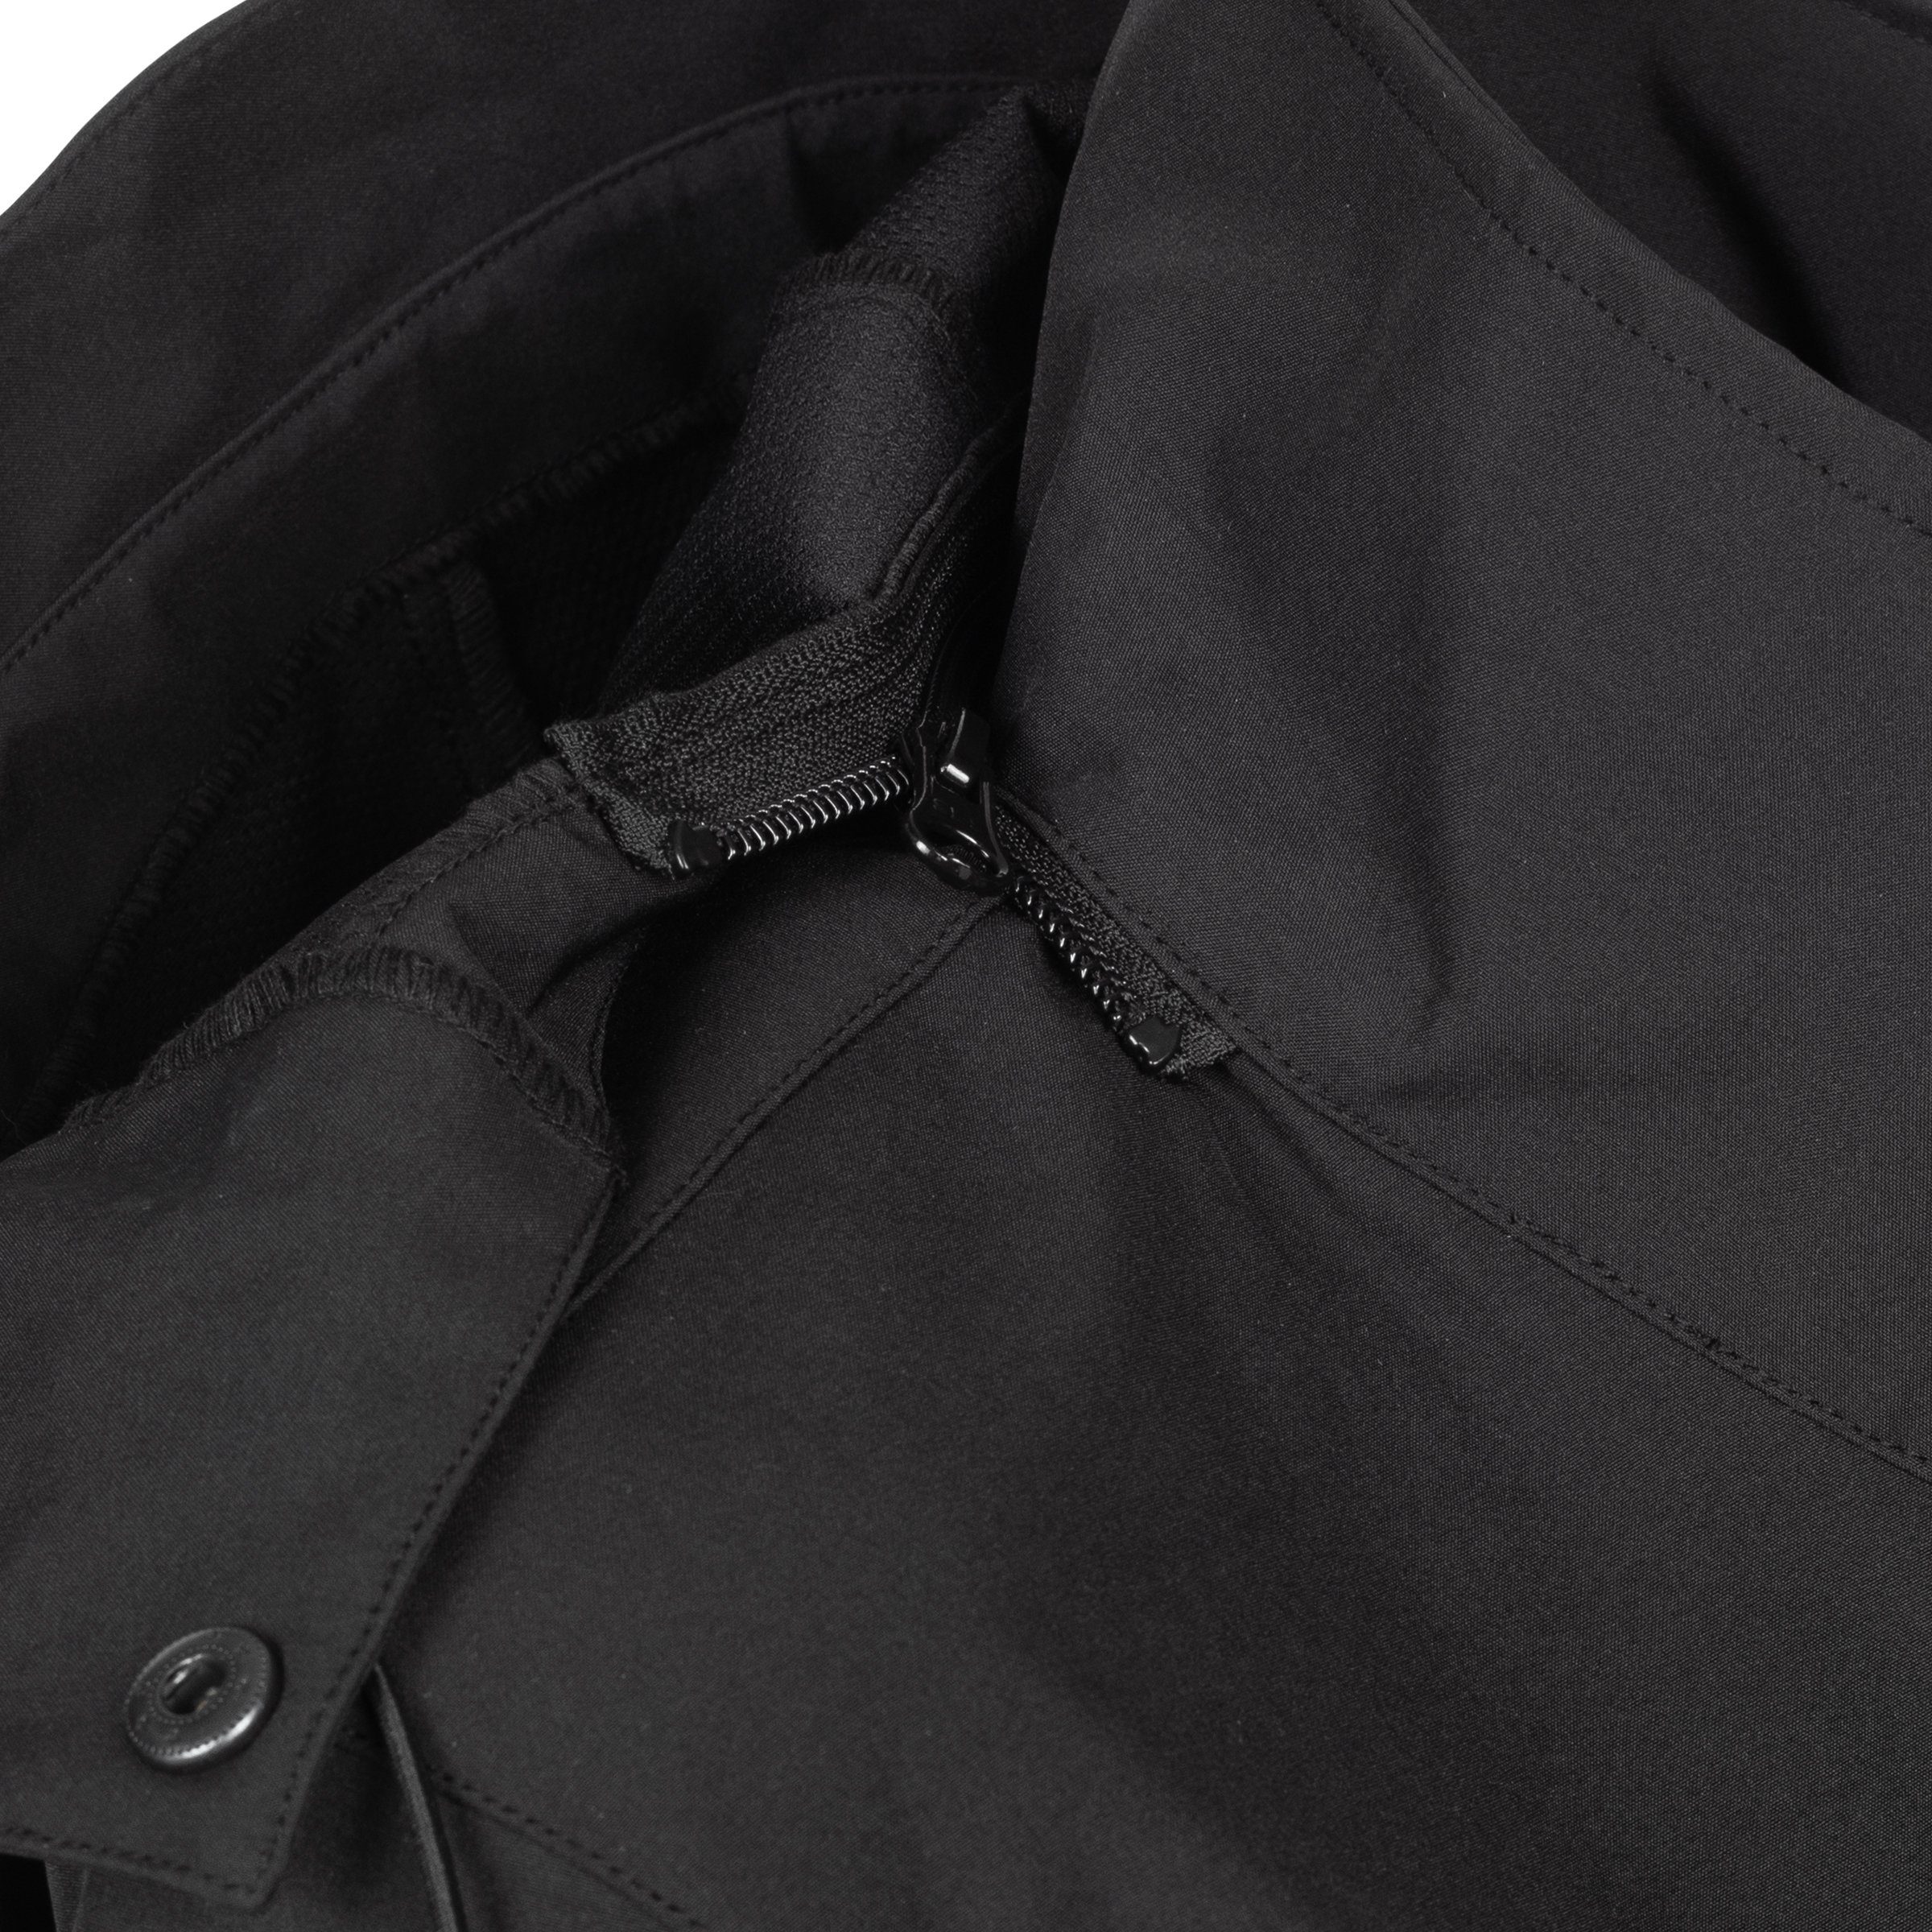 CS WOMEN erhältlich Größen Long Active LONG DEPROC jacket CAVELL Softshellmantel Großen in auch